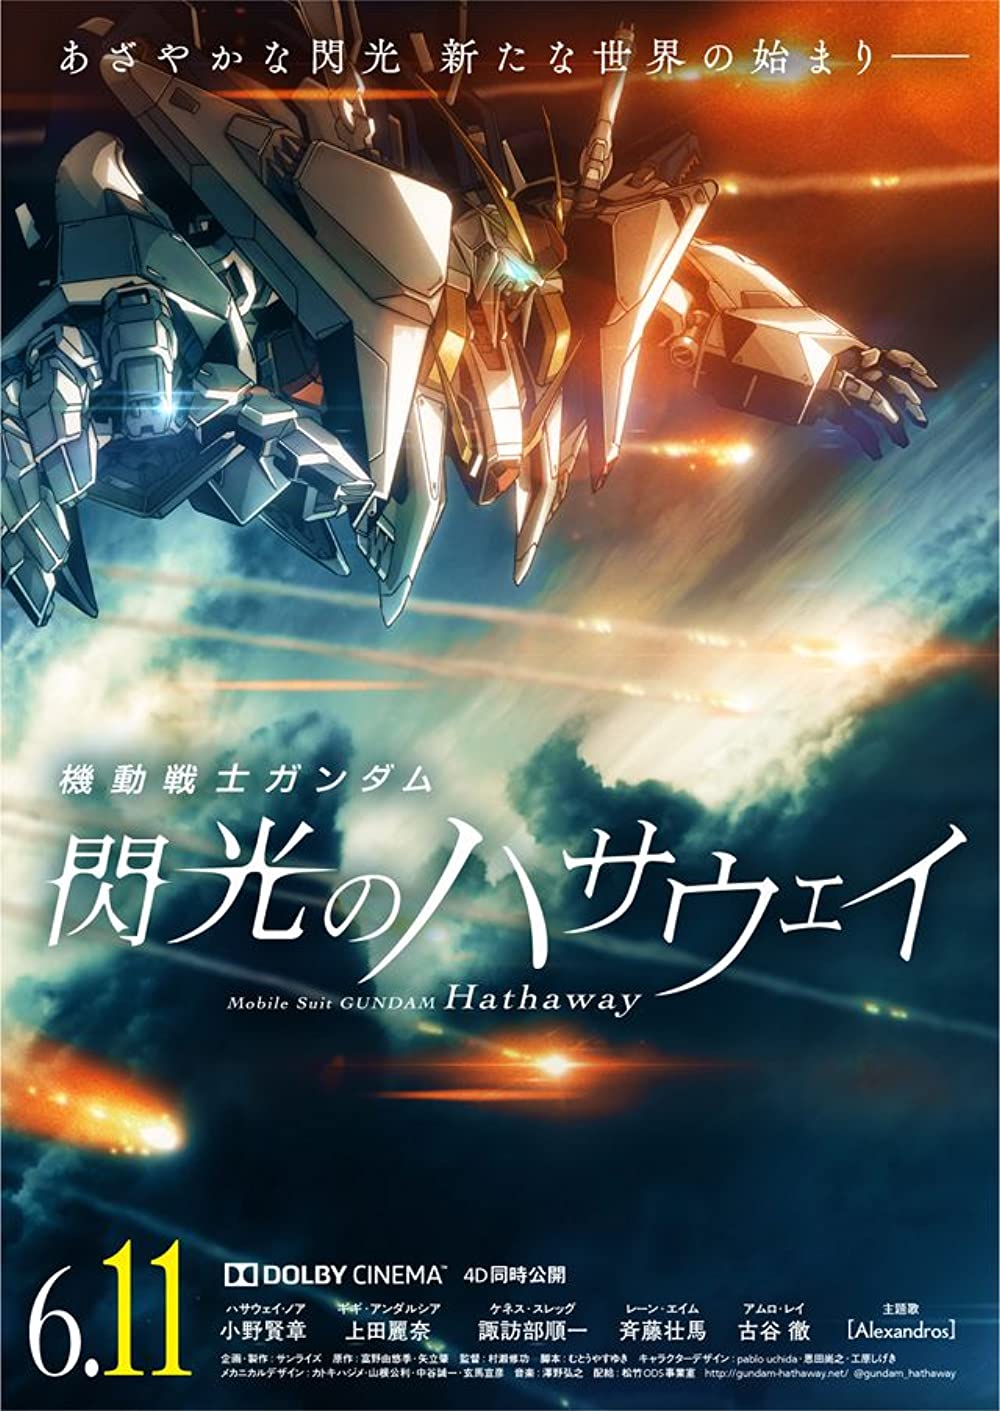 بوستر Mobile Suit Gundam Hathaway